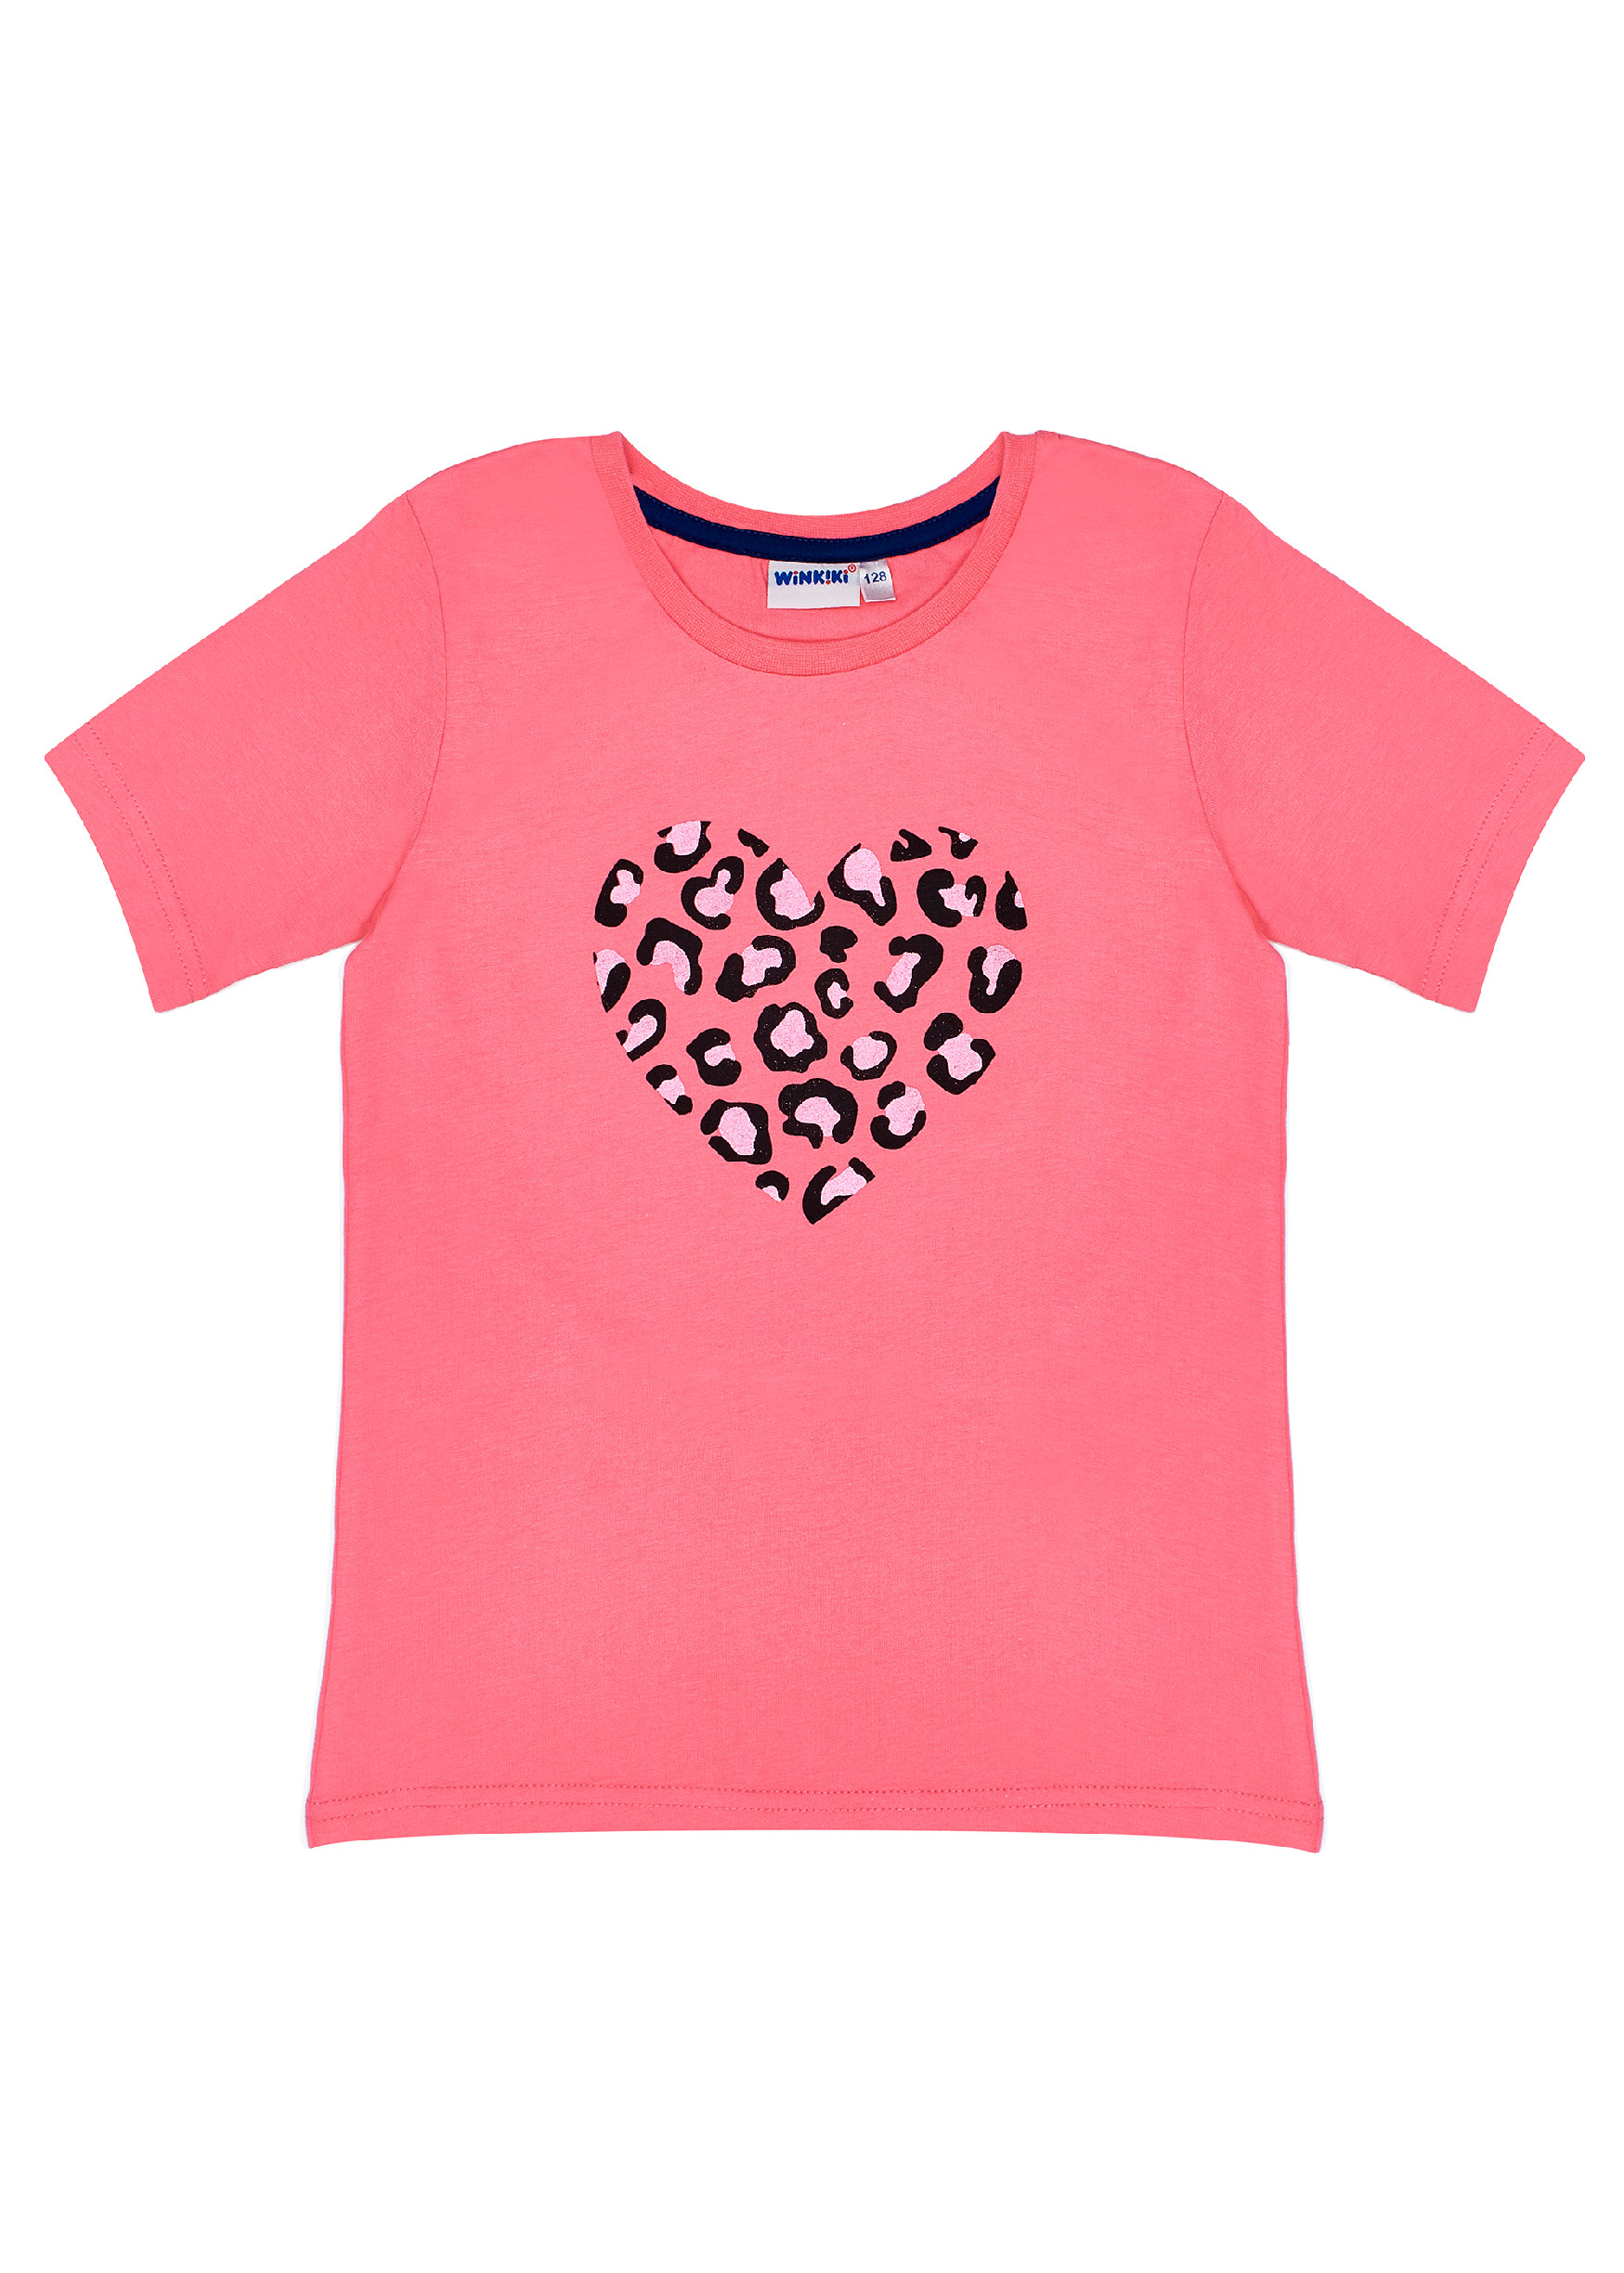 Dívčí tričko - Winkiki WJG 91407, lososová Barva: Lososová, Velikost: 146